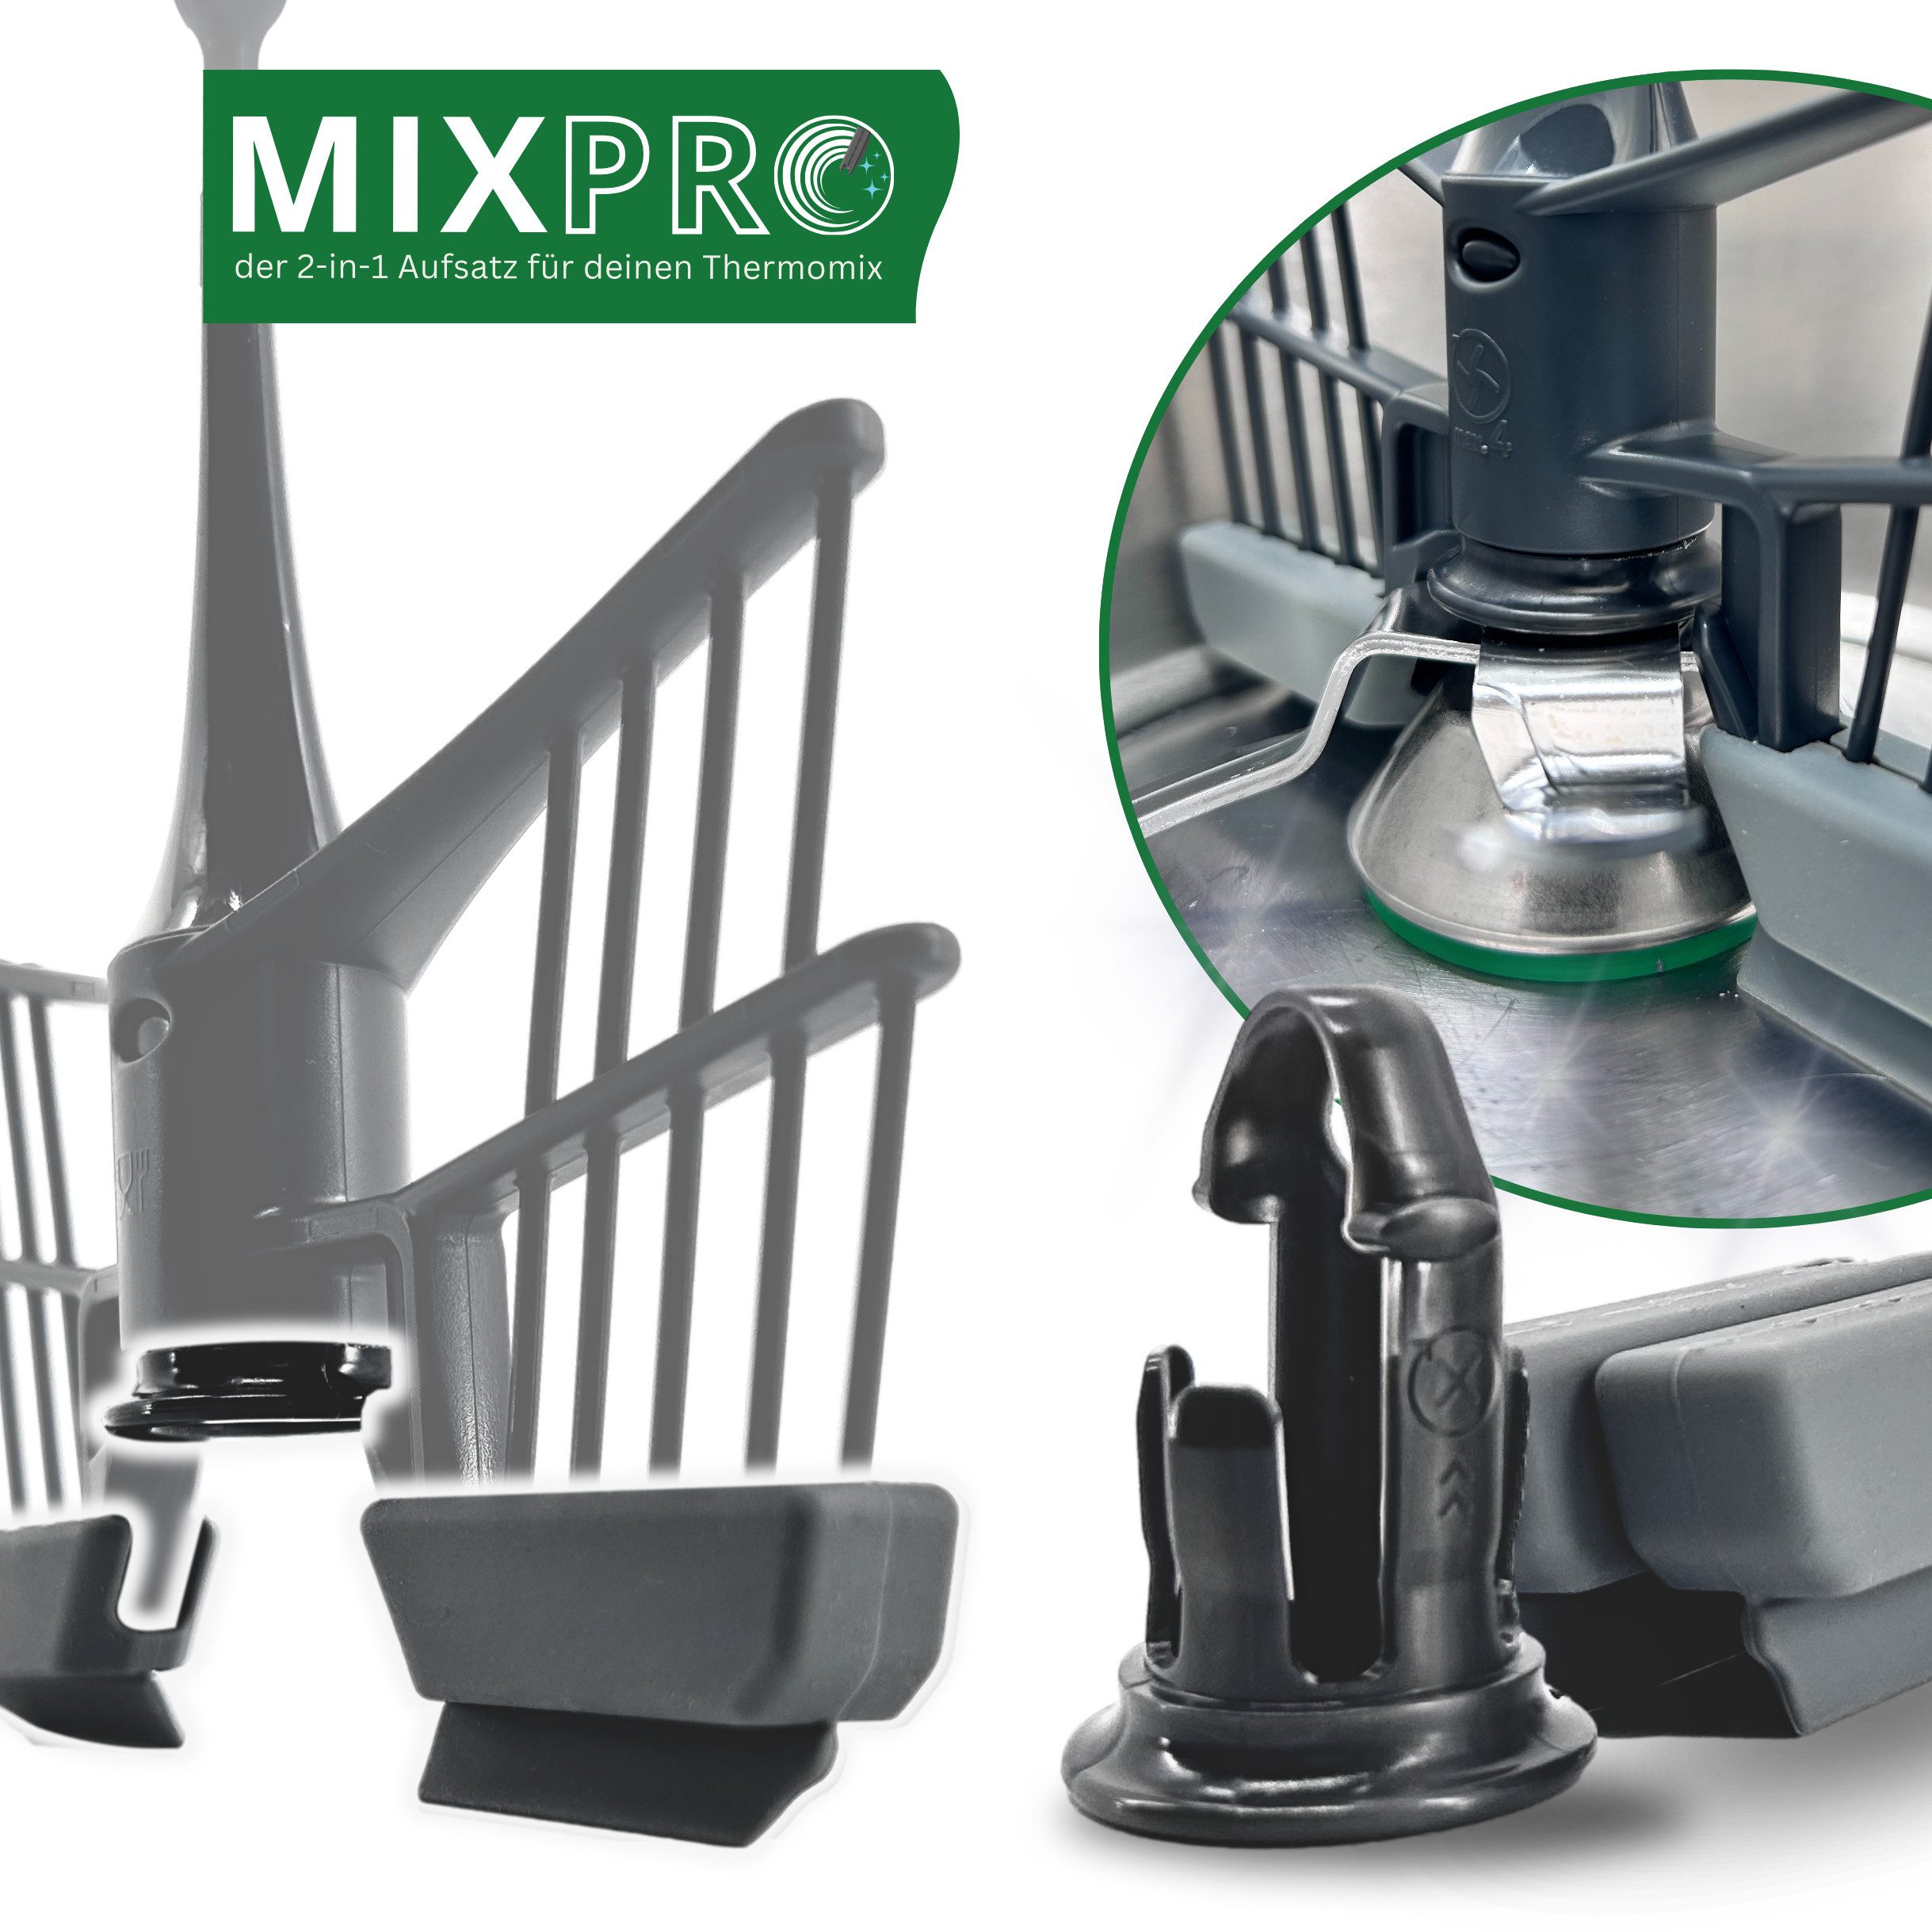 Leckerhelfer - automatisch Lecker Küchenmaschinen Zubehör-Set MixPRO - der 2-in-1 Aufsatz passend für den Thermomix TM6 und TM5, Zubehör für Thermomix TM5 und TM6, Schutz vor Anbrennen, Lebensmittelecht, BPA-frei